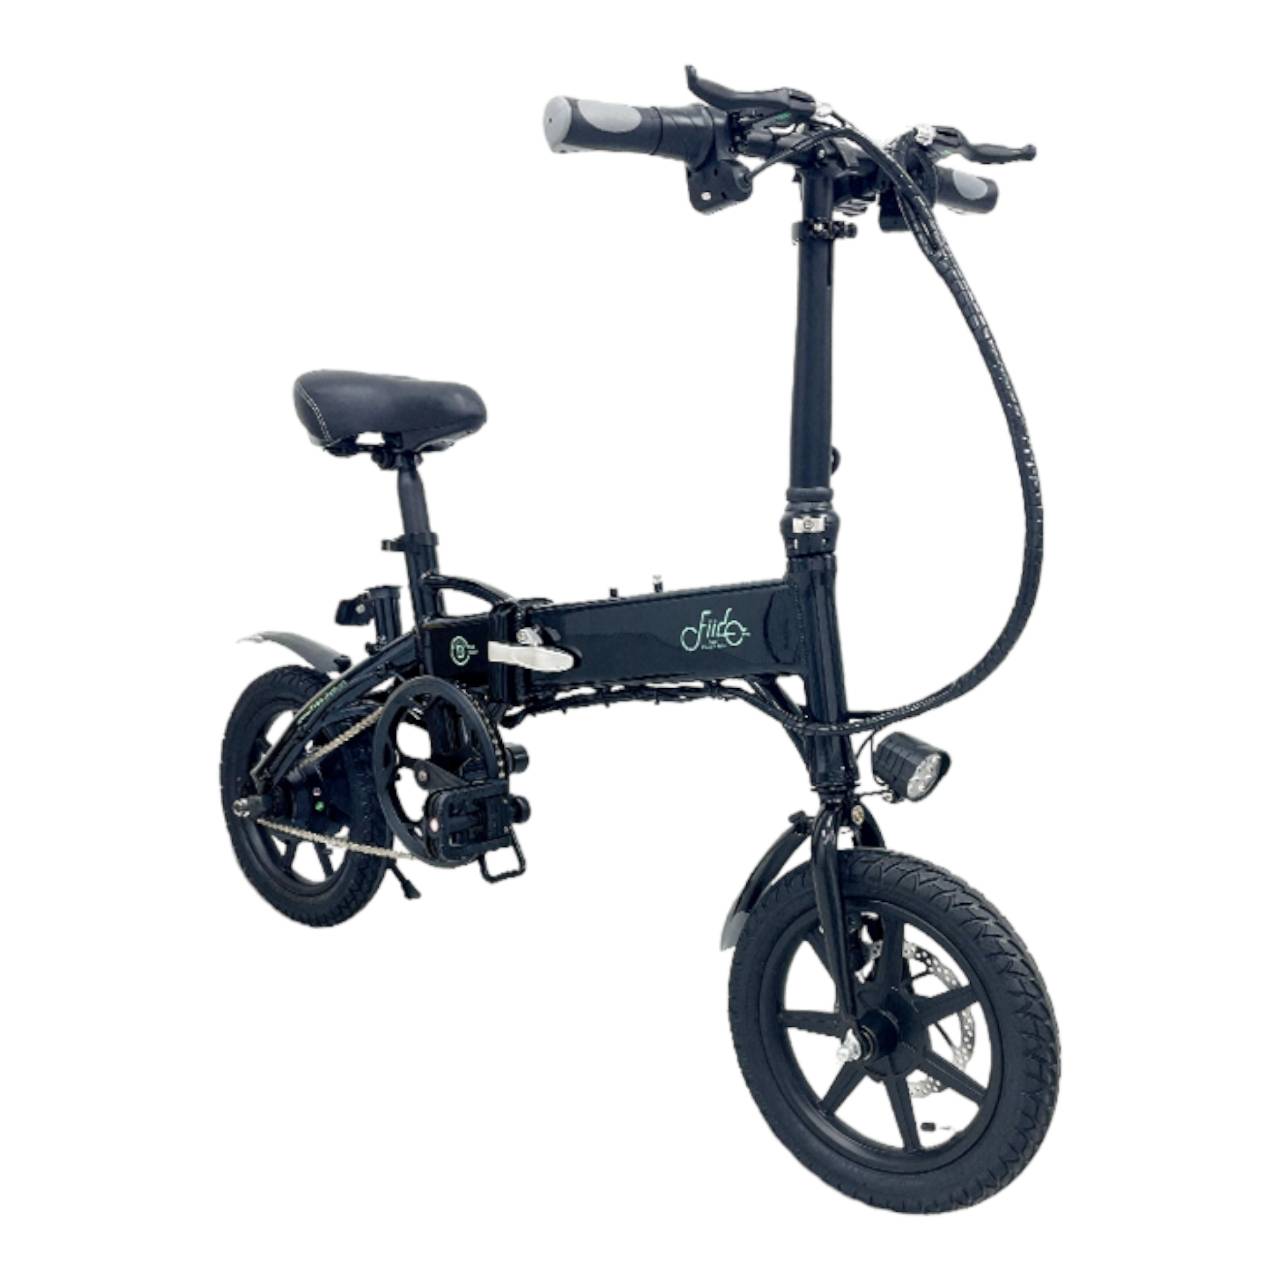 【迪特軍】F1 電動自行車、電動腳踏車